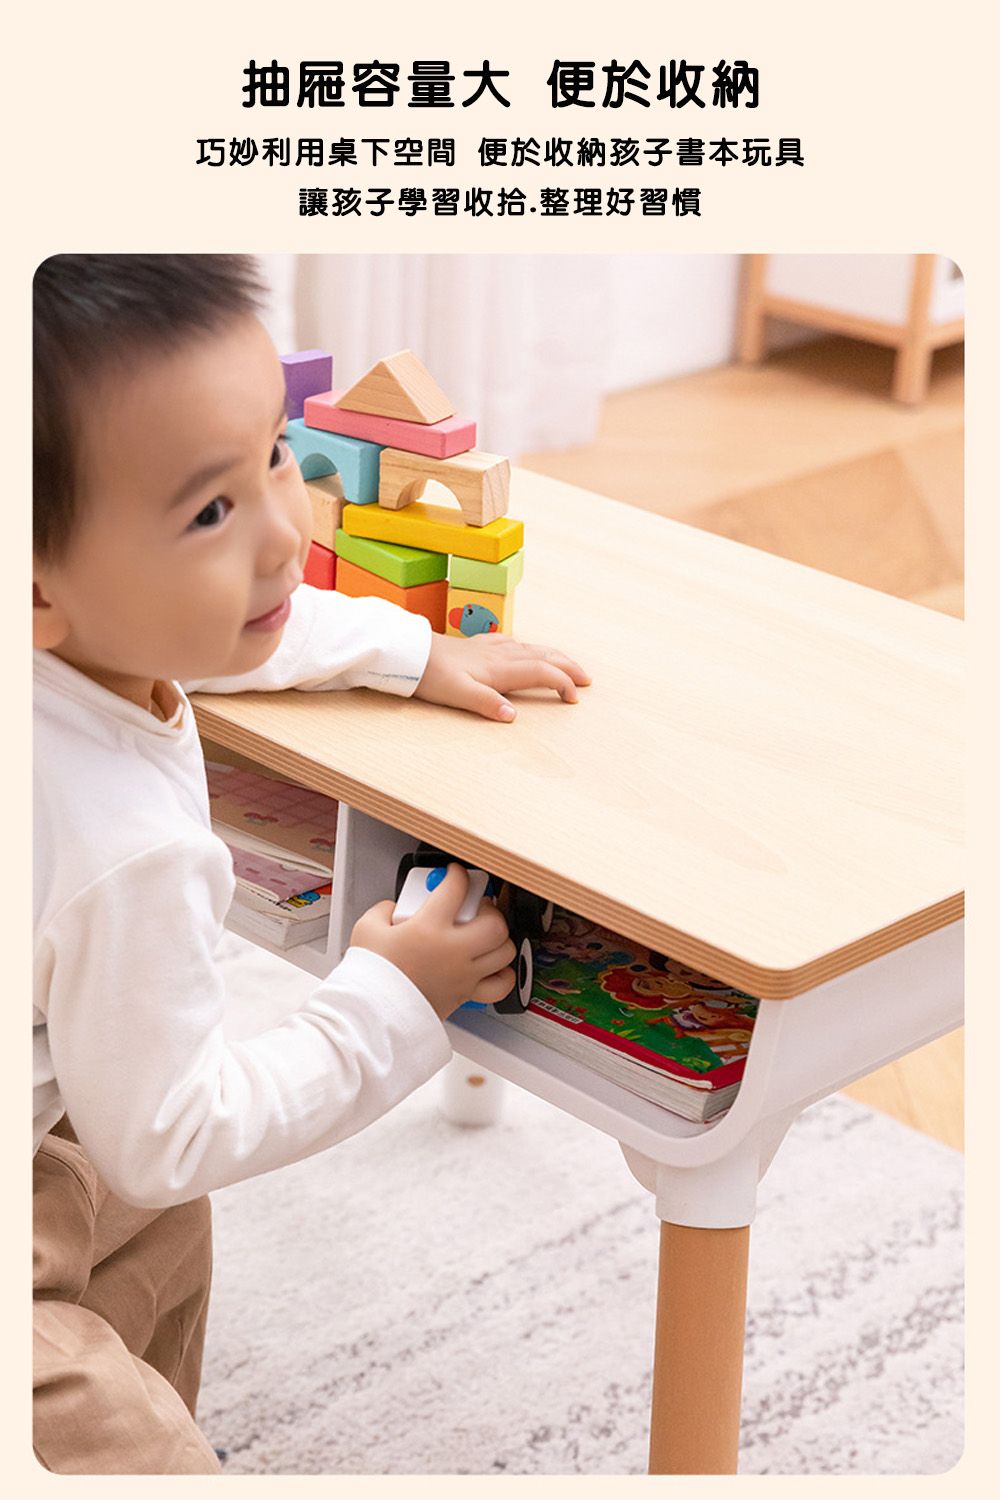 抽屜容量大 便於收納巧妙利用桌下空間便於收納孩子書本玩具讓孩子學習收拾.整理好習慣